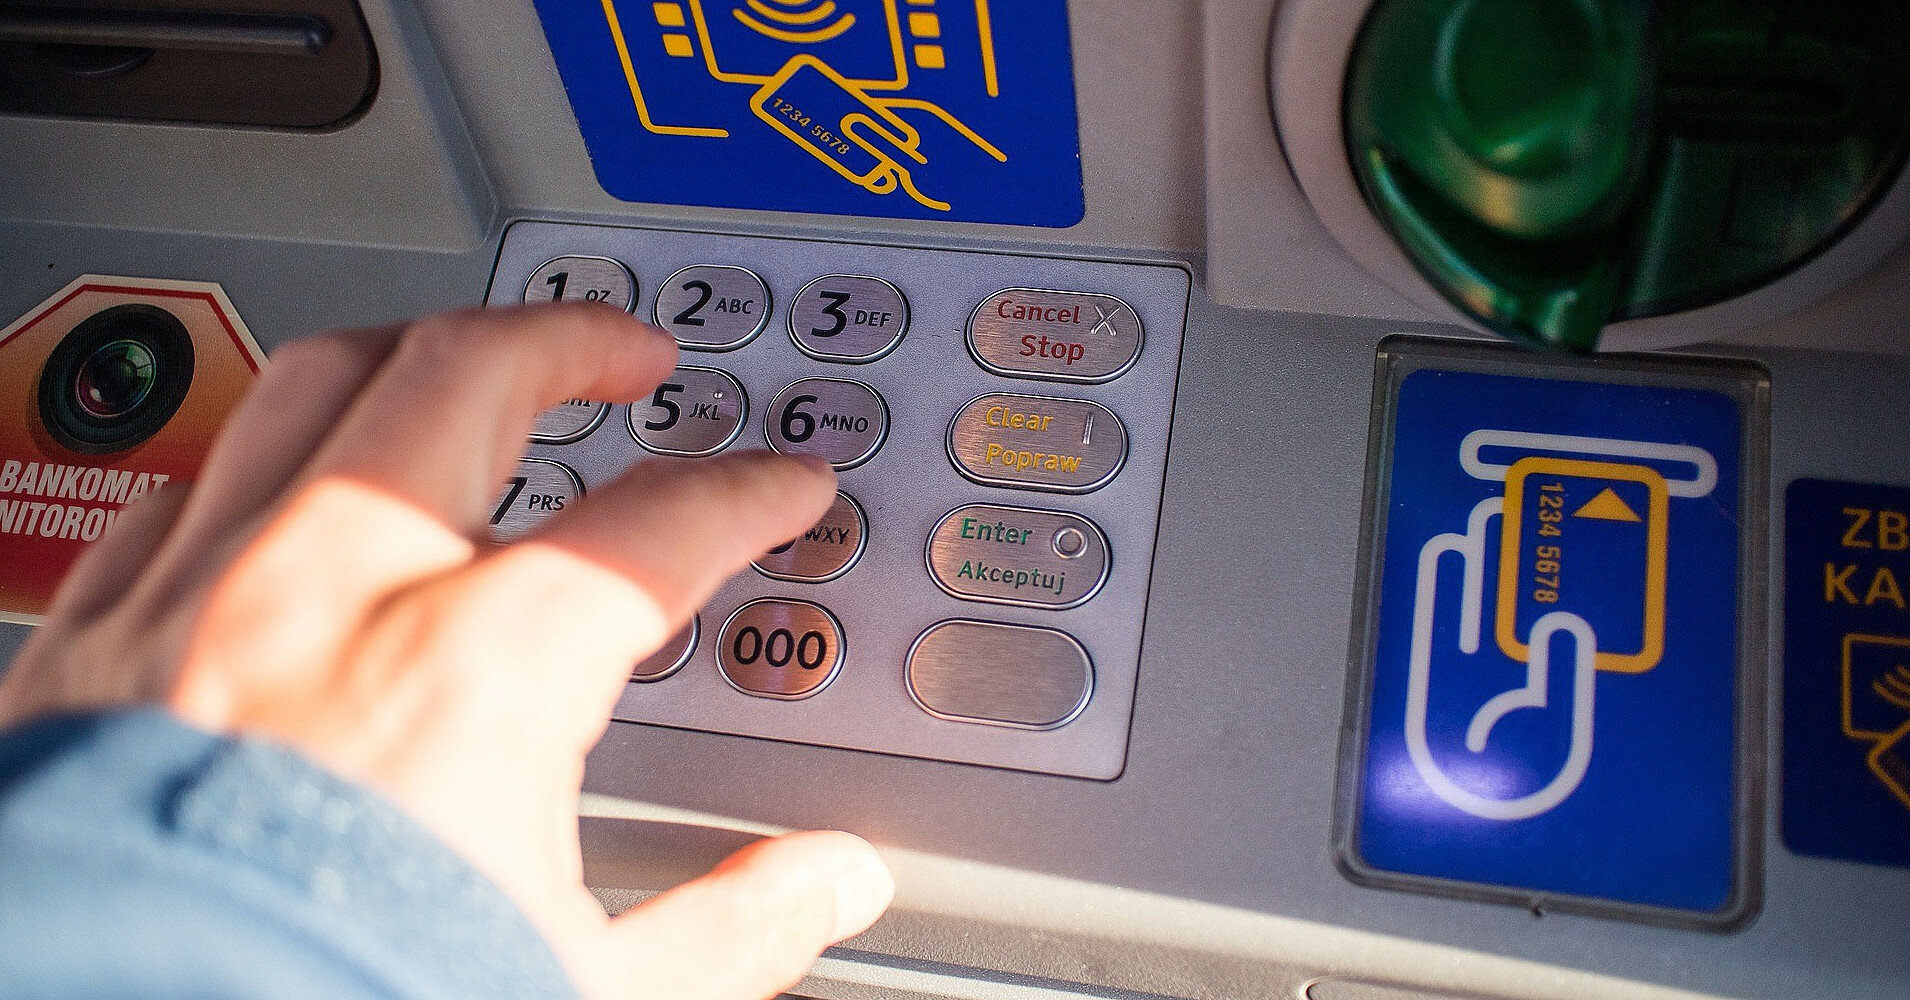 Банківська система України: що змінилося за тиждень